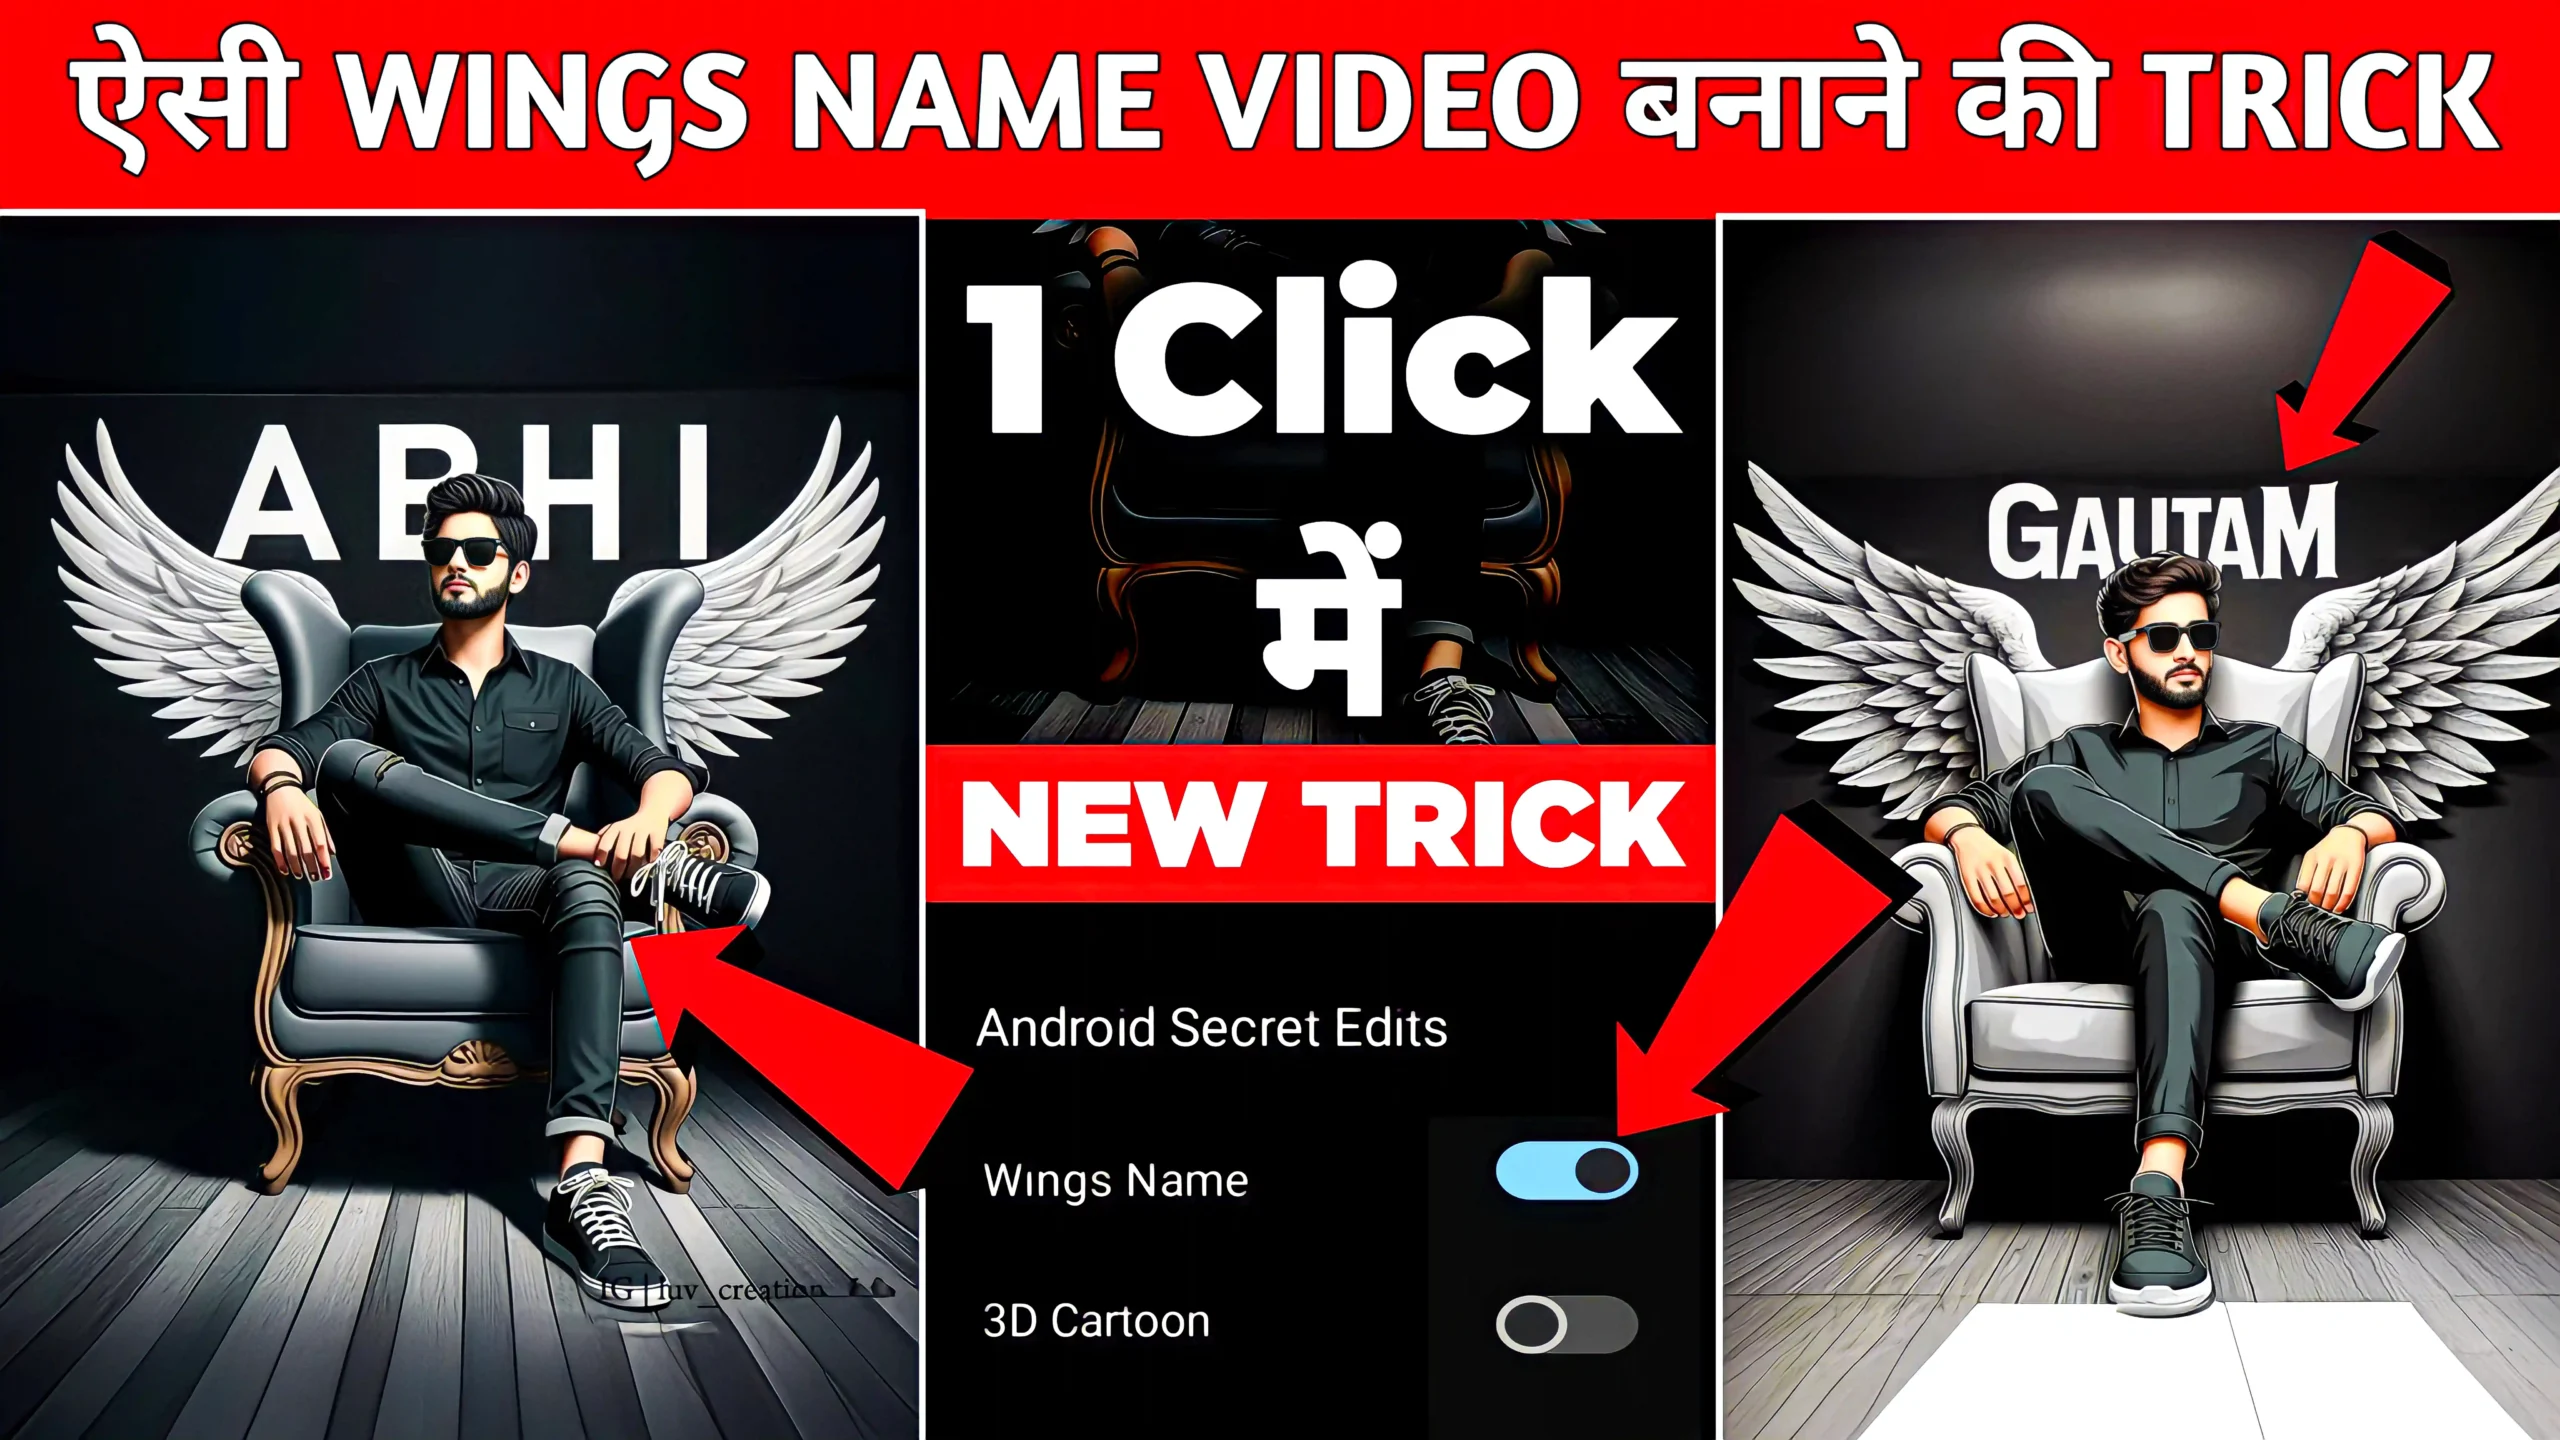 Bing AI 3D Wings Name image Generator